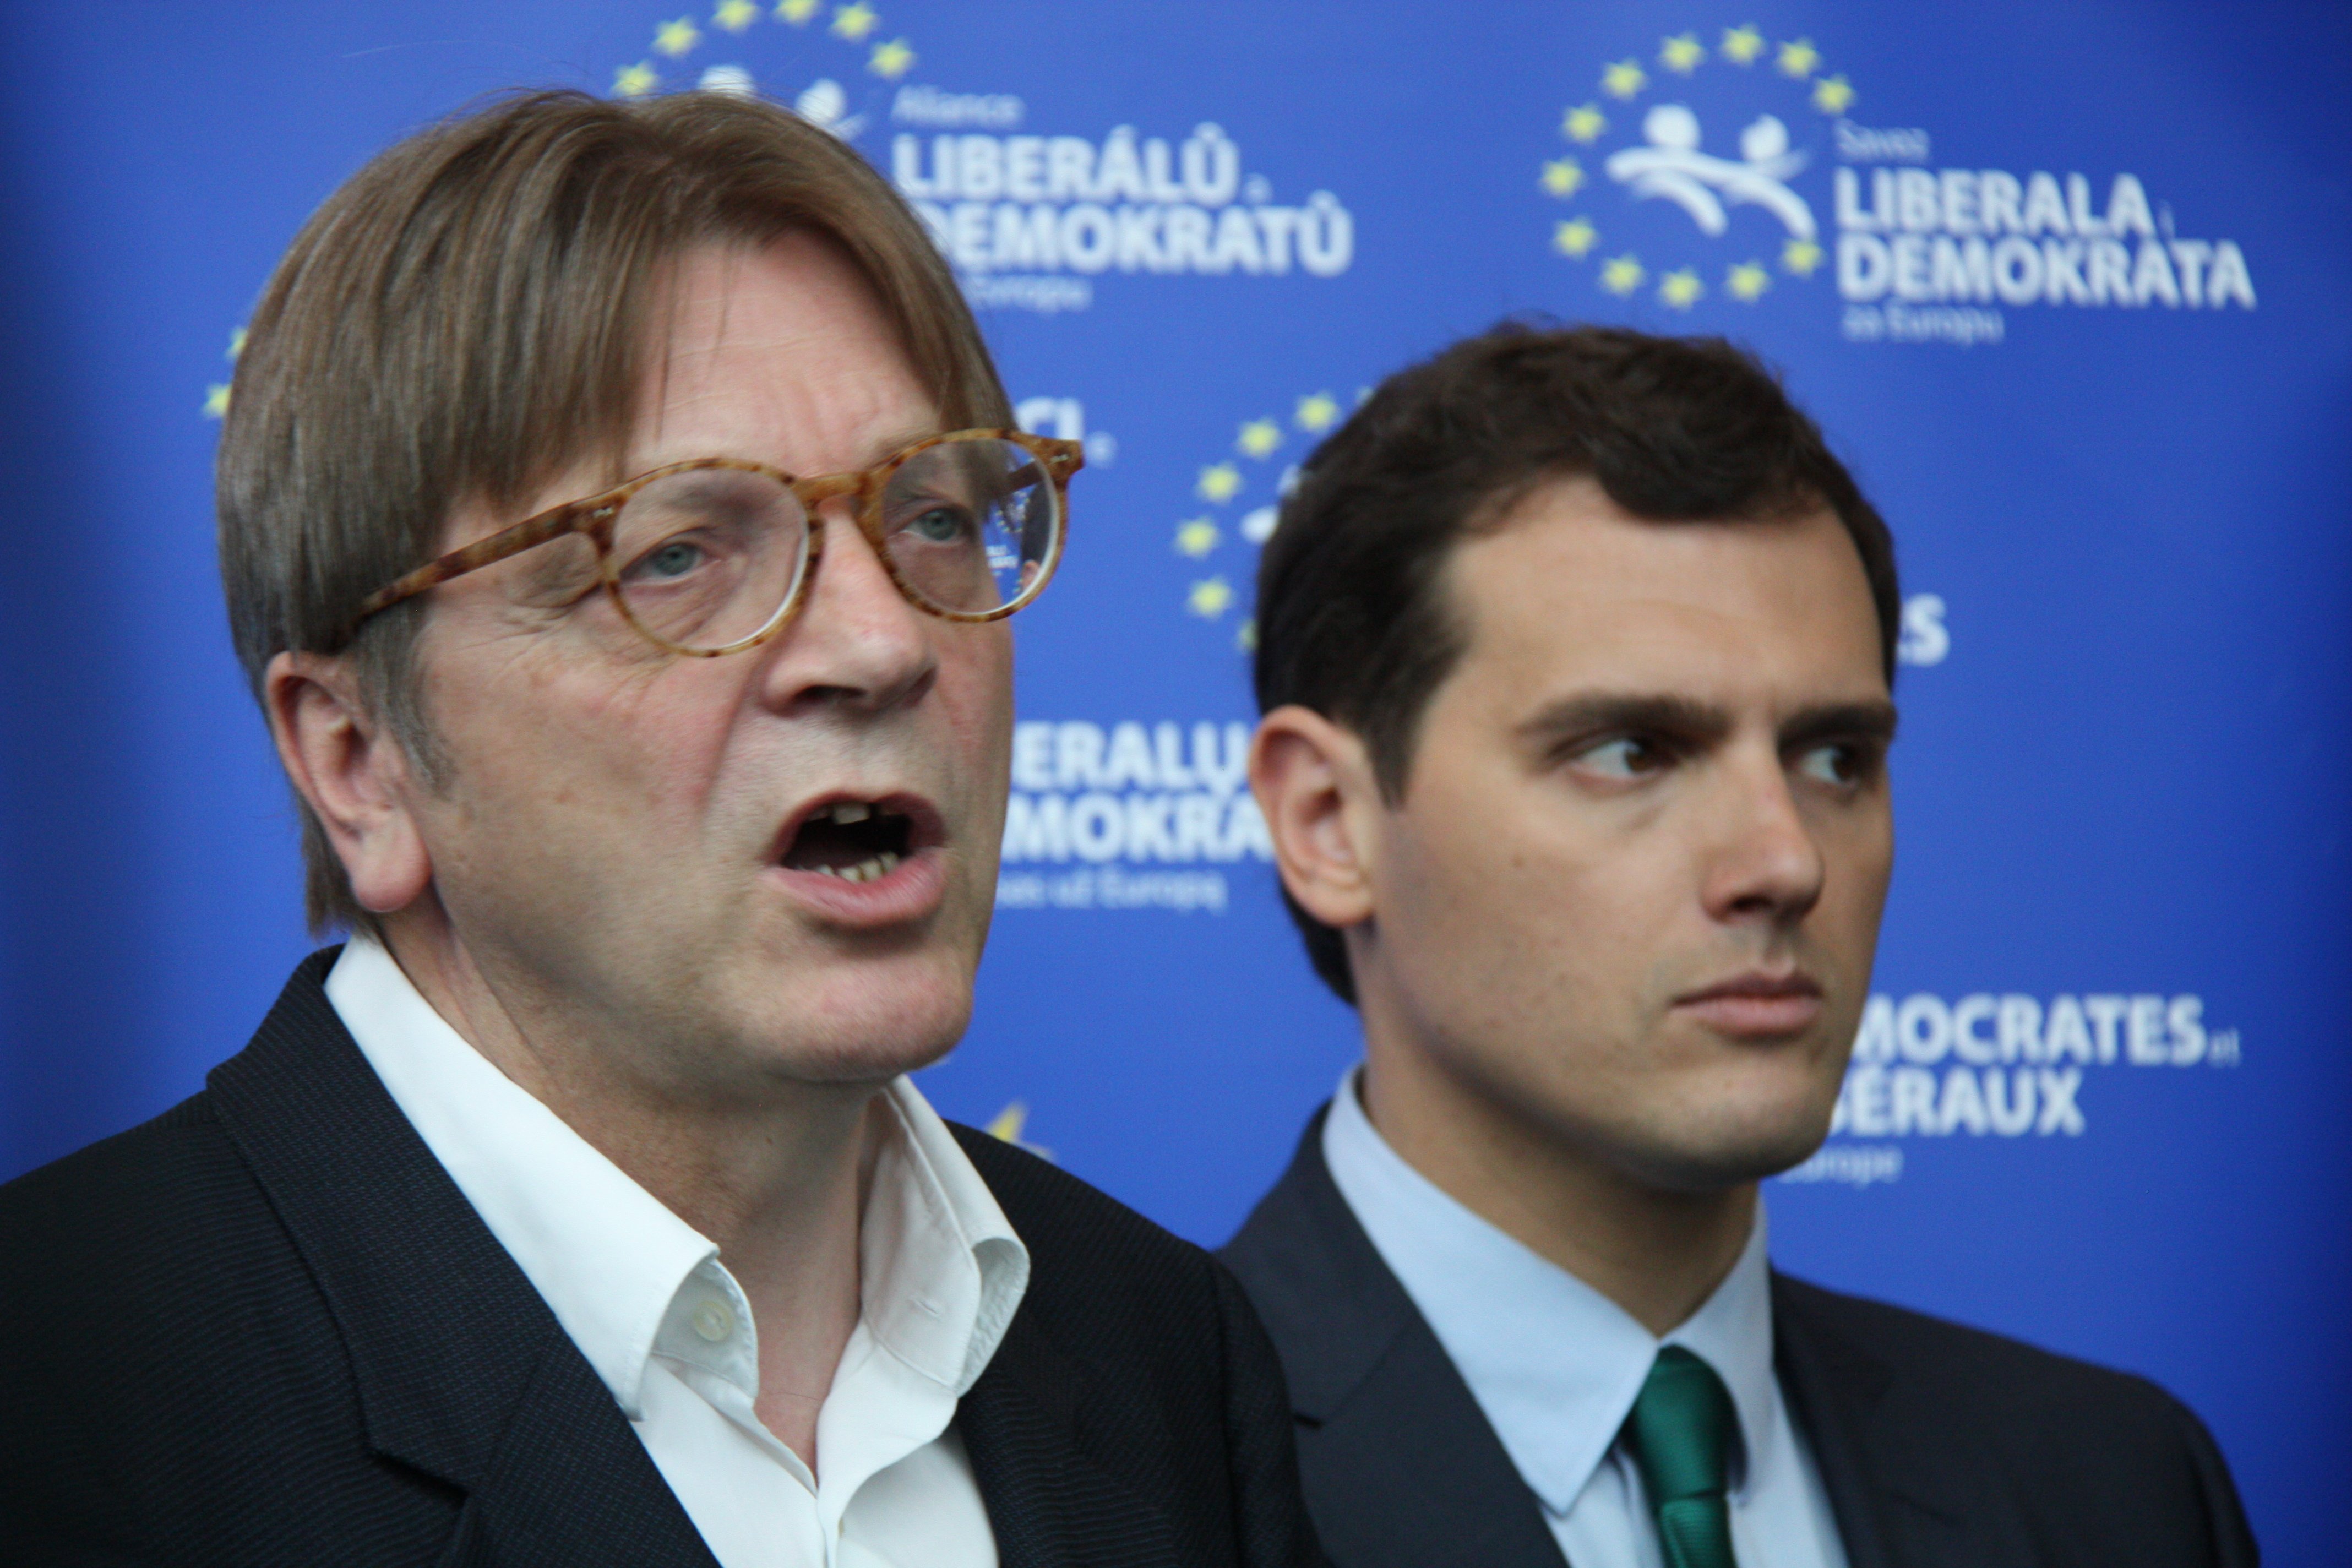 El líder dels liberals europeus justifica el pacte PP-Cs-Vox a Andalusia